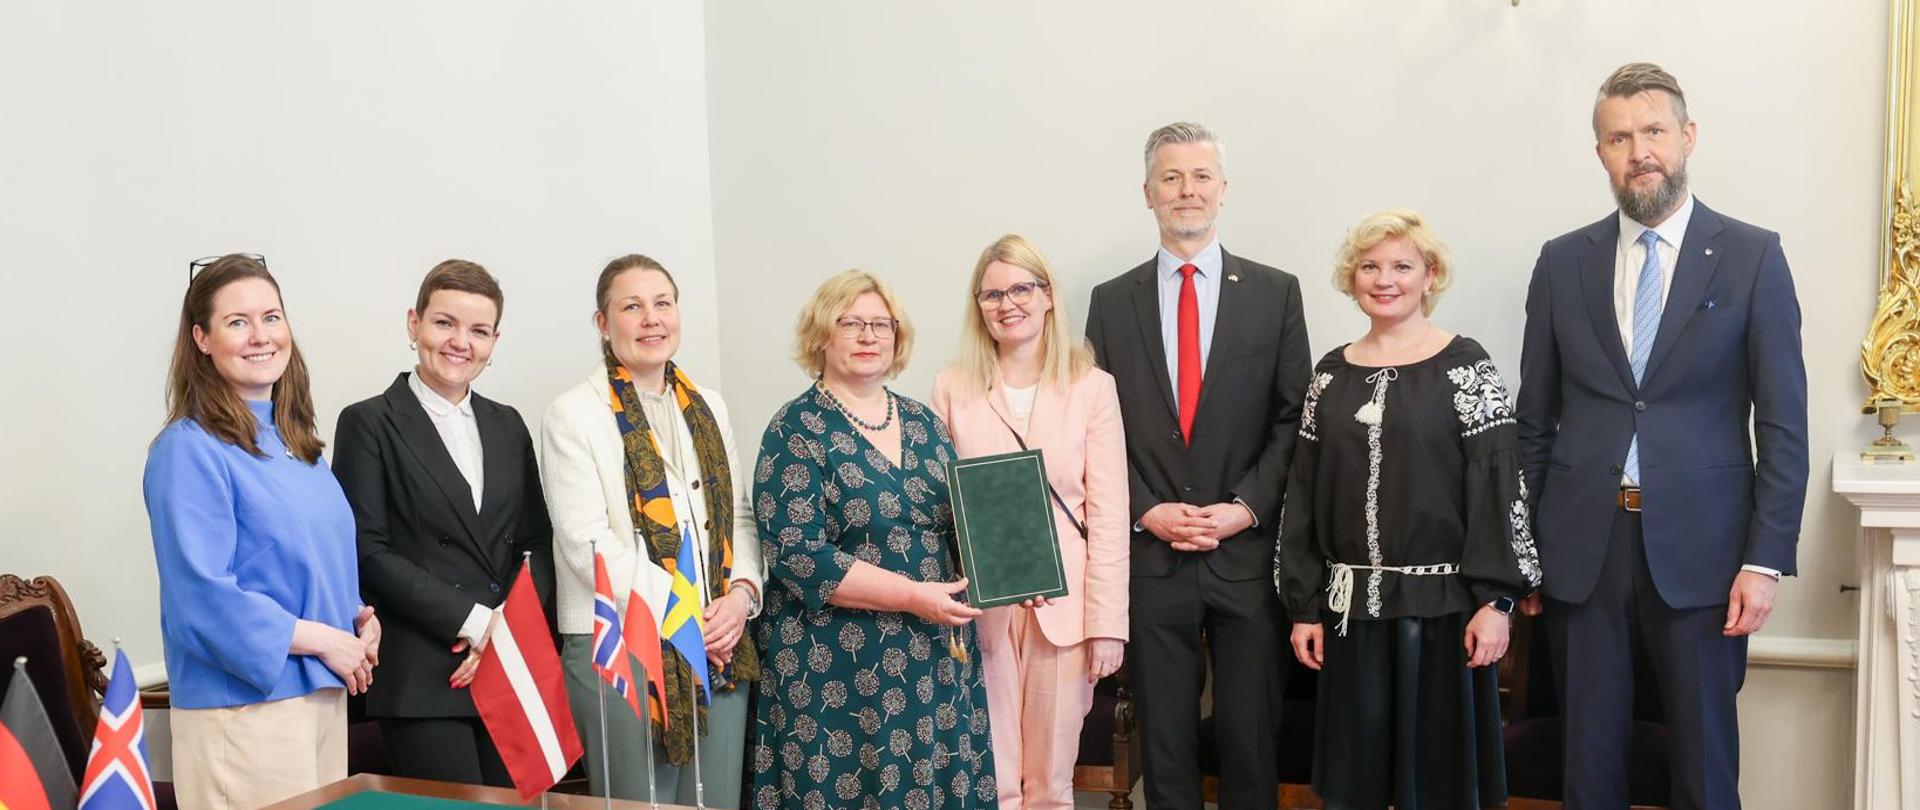 Rozwijamy współpracę kulturalną w regionie Morza Bałtyckiego i Północnego, fot. OKM / Katarina Koch